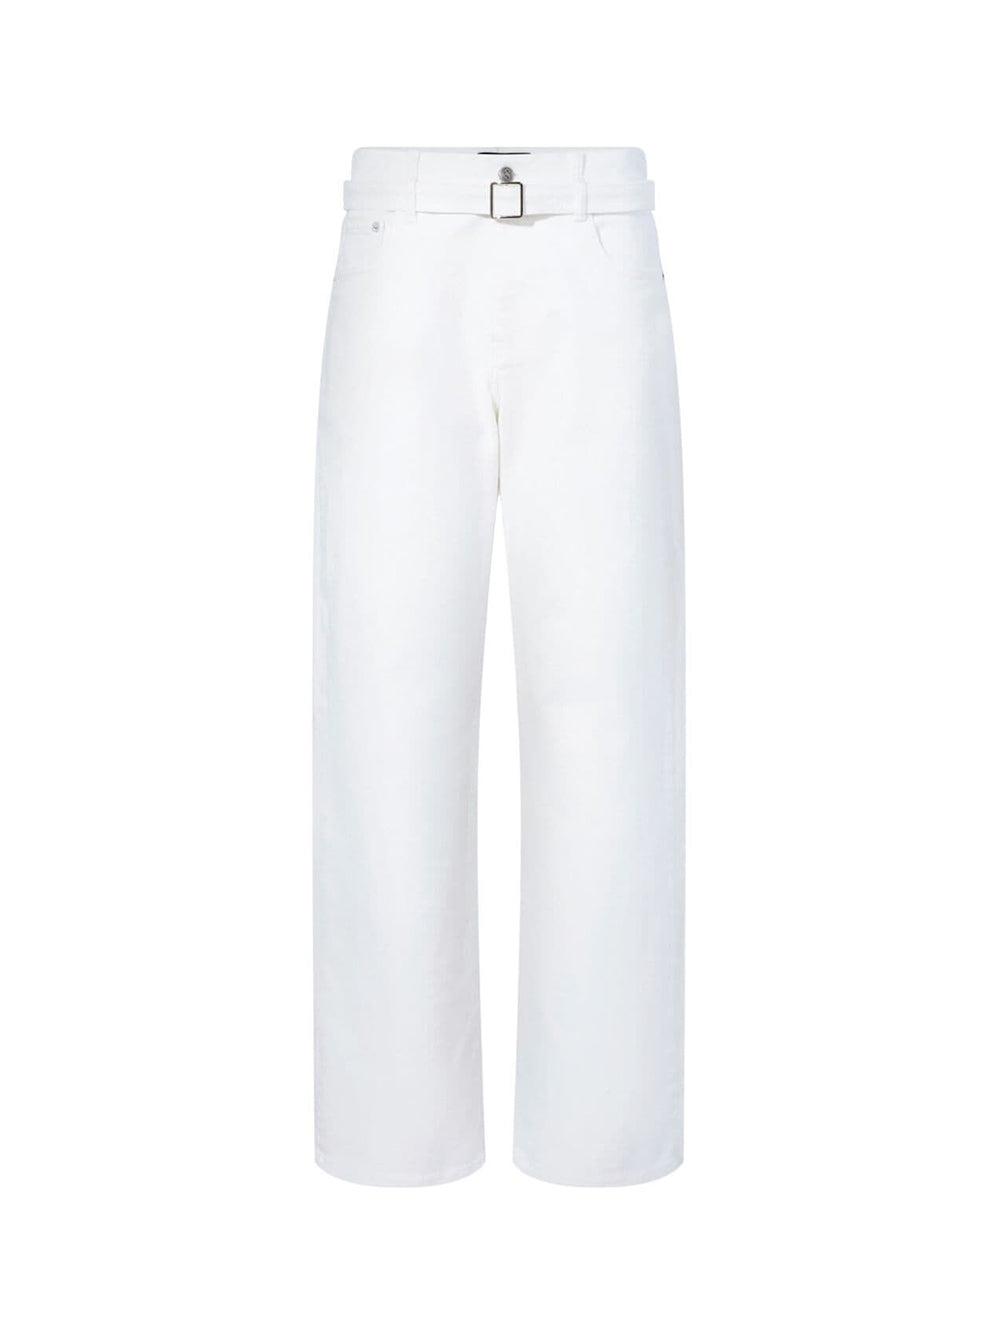 White Ellsworth straight-leg jeans